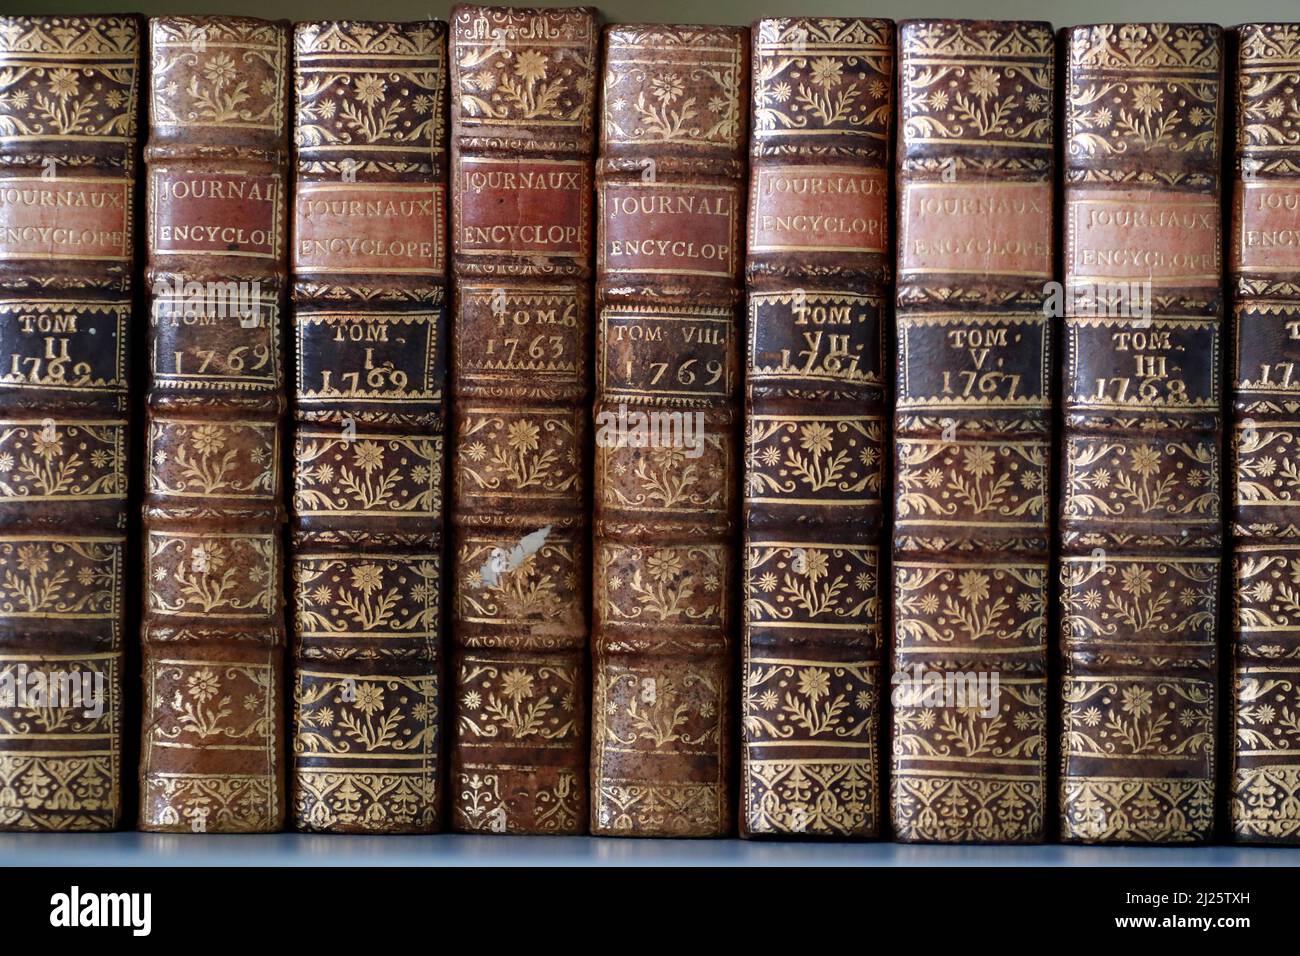 Alte Enzyklopädie allgemeine Wissensbücher. Bibliothek. Stockfoto